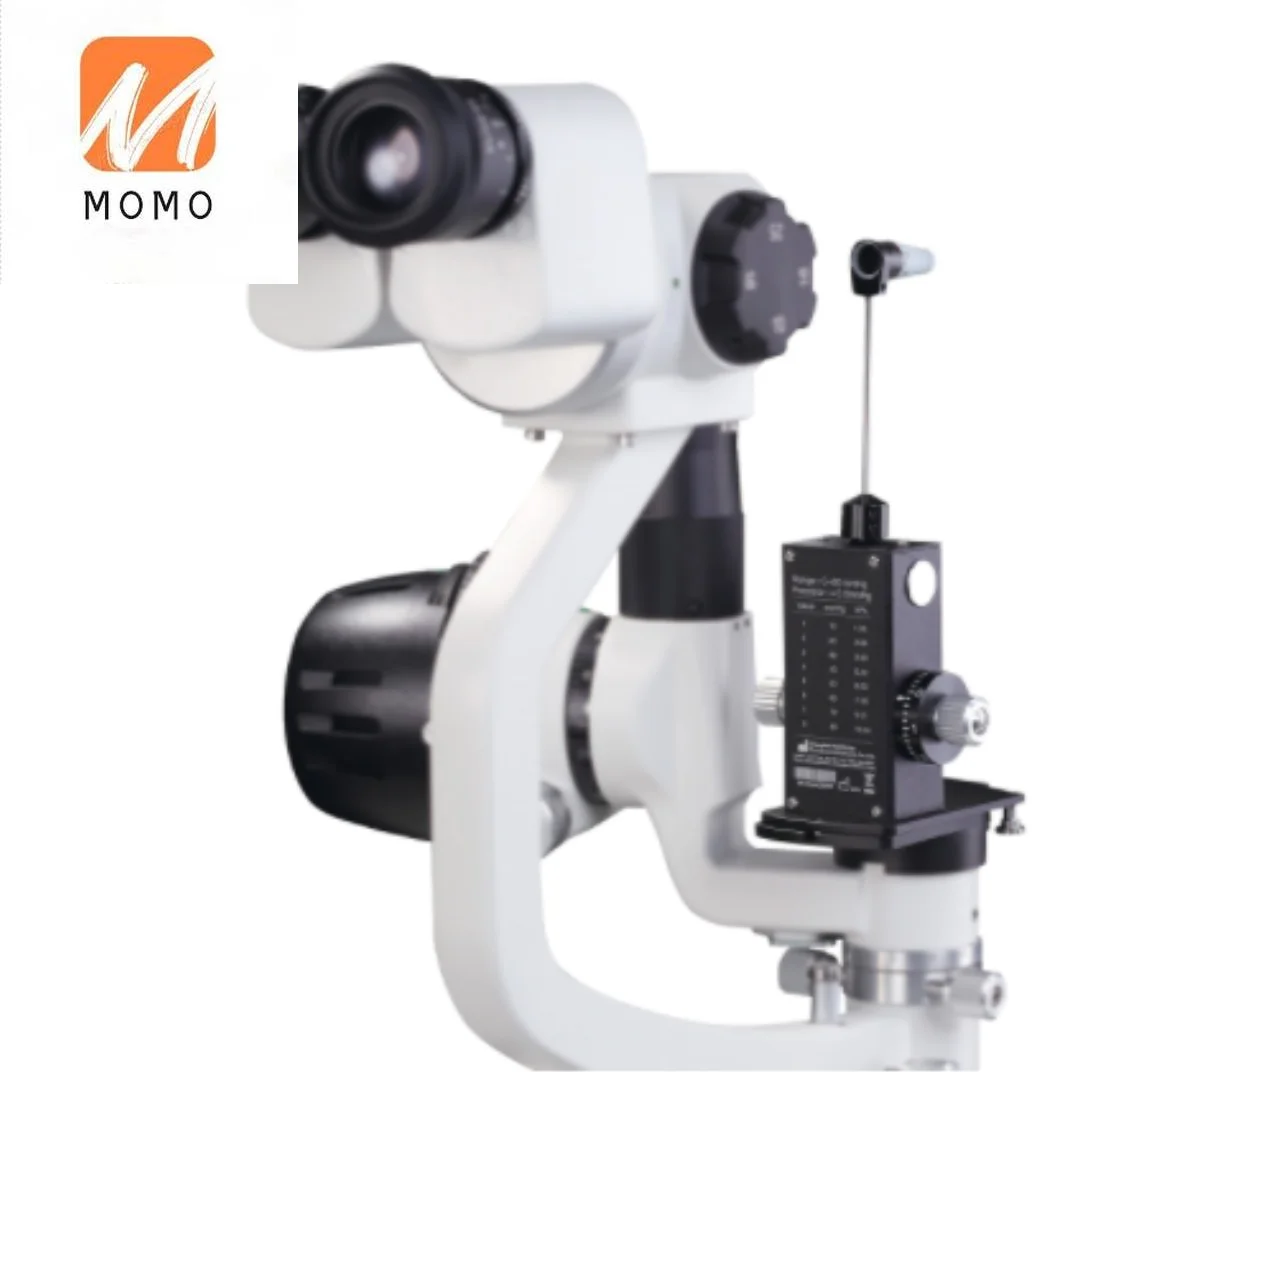 הלחץ בעין הבחינה המכשיר אופתלמולוגי נייד מנורת סדק עין Tonometer דומה Tonometer עבור אופטי החנות .